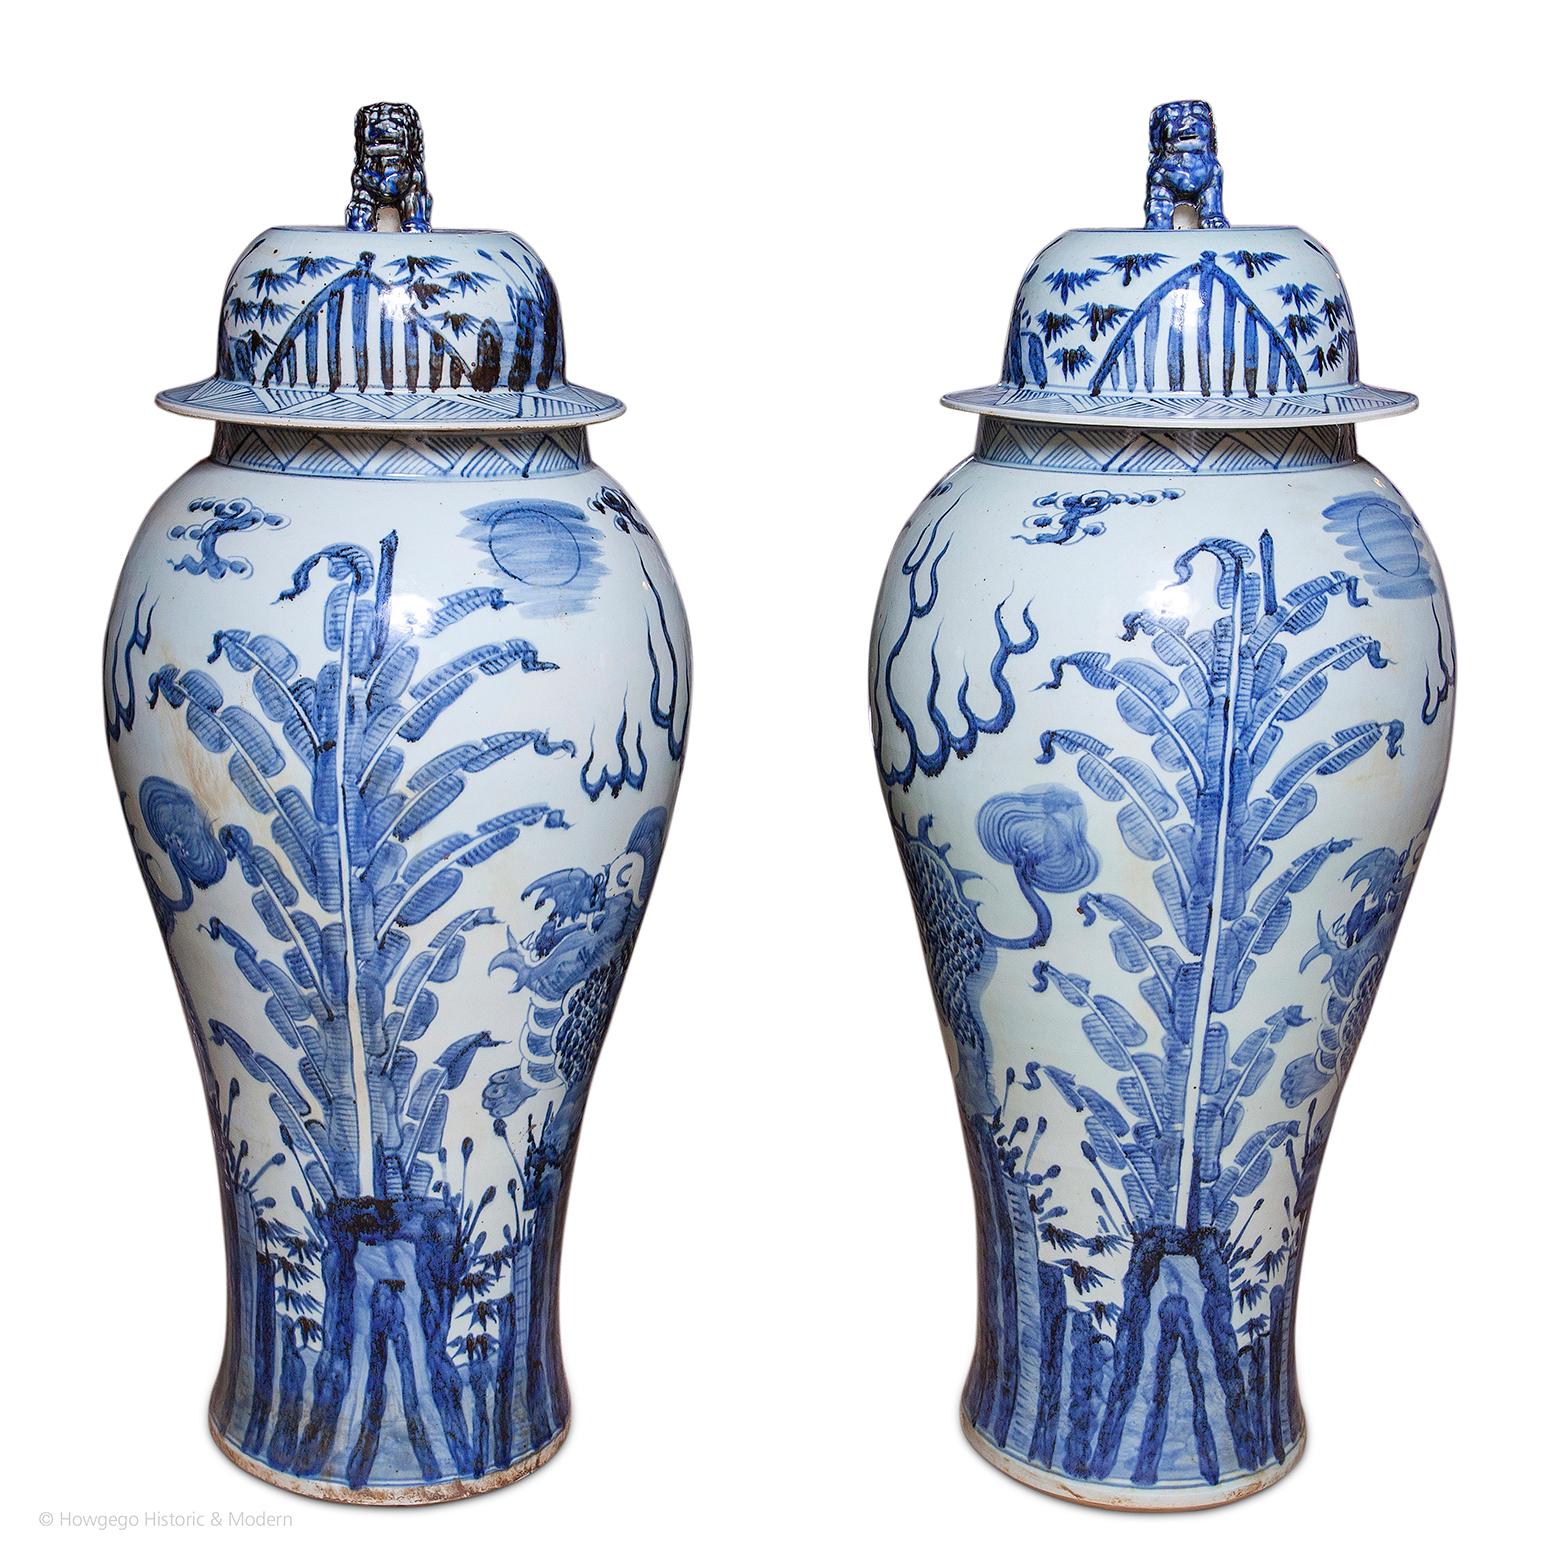 Paar Vasen Deckel chinesisches blau-weißes Porzellan Garnitur Barock 114cm 45